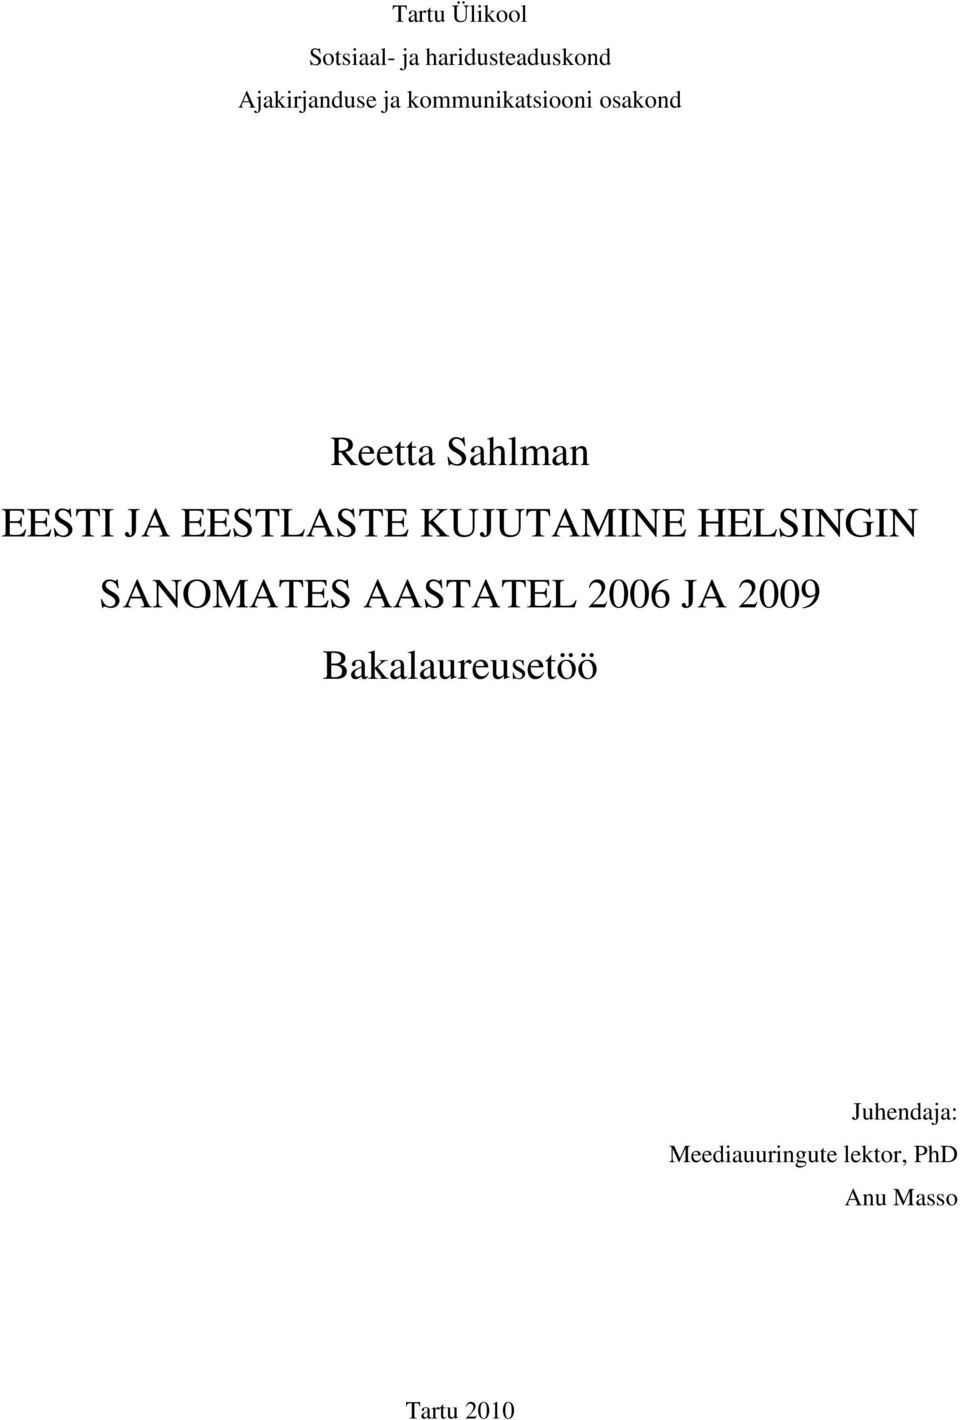 KUJUTAMINE HELSINGIN SANOMATES AASTATEL 2006 JA 2009